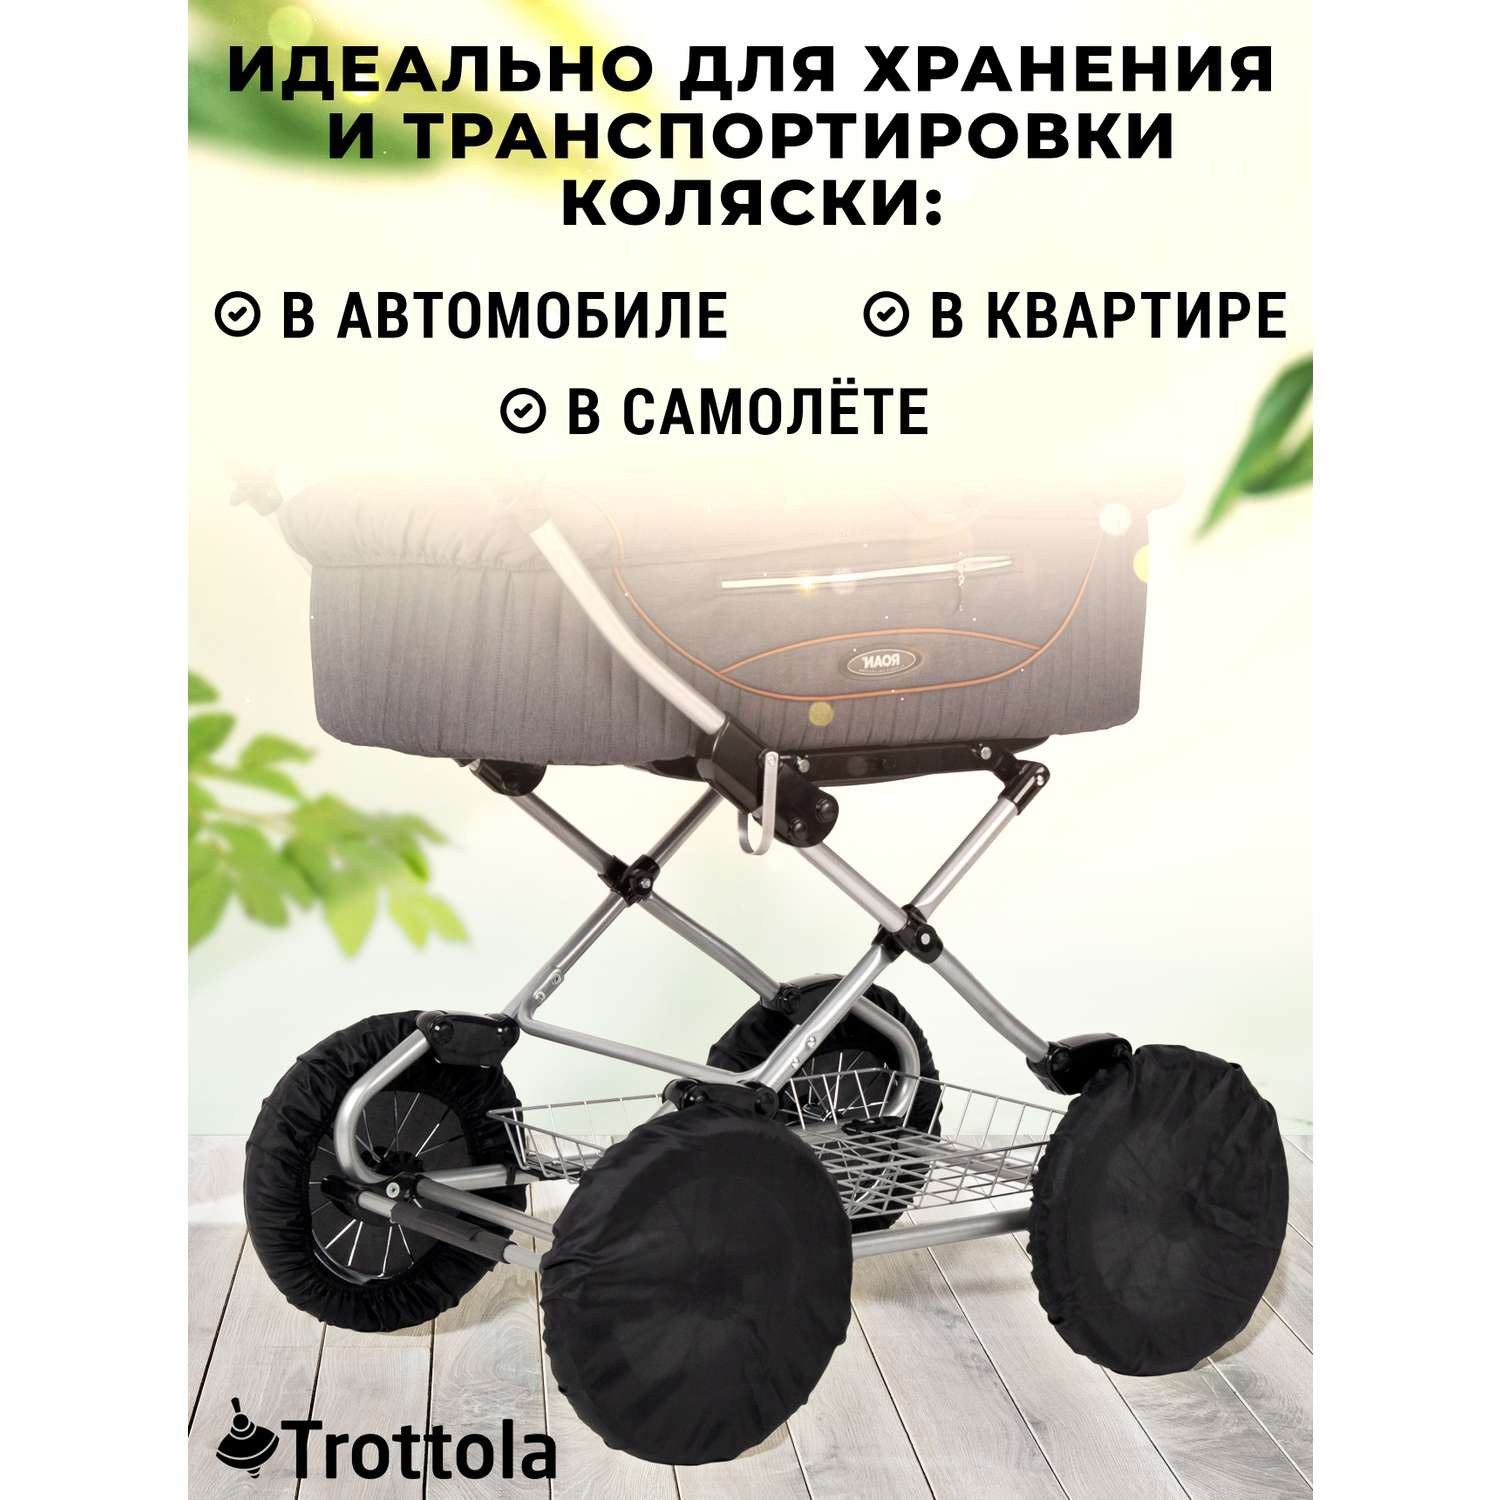 Чехлы на колеса Trottola черные 12 дюймов 32 см 4 шт на детскую коляску Т022/черный - фото 5